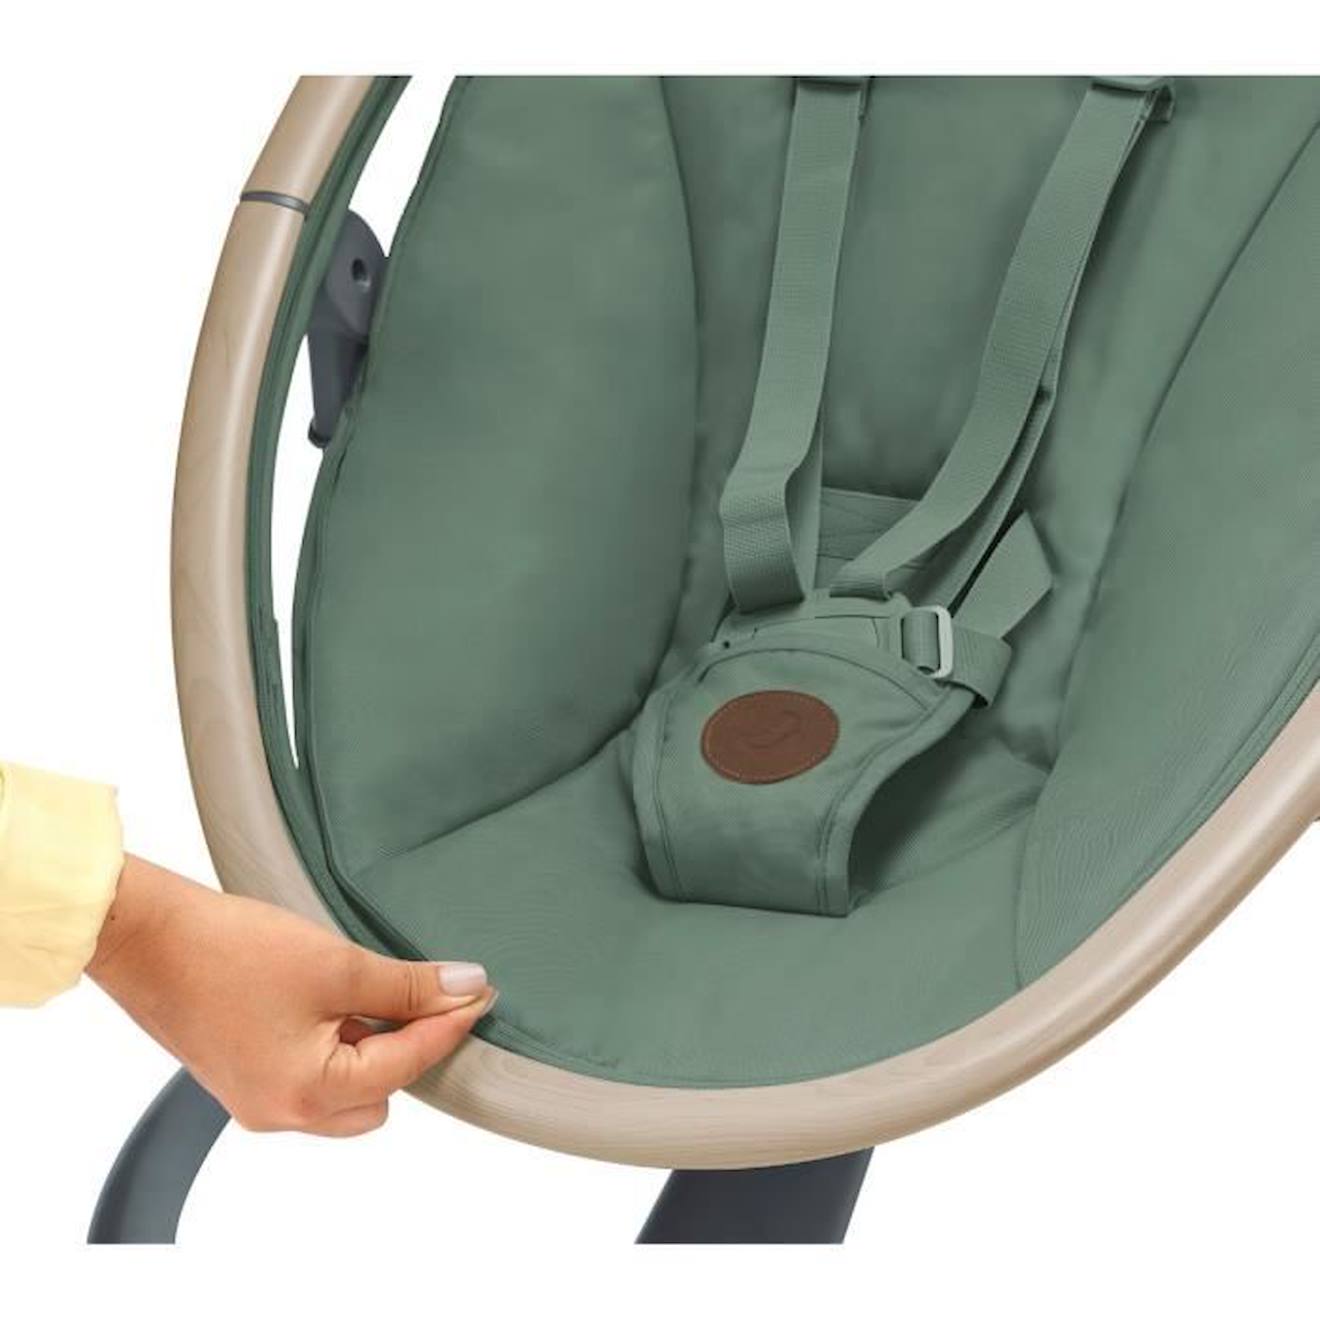 Maxi-Cosi Cassia balancelle bébé électrique, 0-6 mois, 9 kg max, transat  bébé, 12 mélodies, rotation 360°, détection mouvement, 5 vitesses de